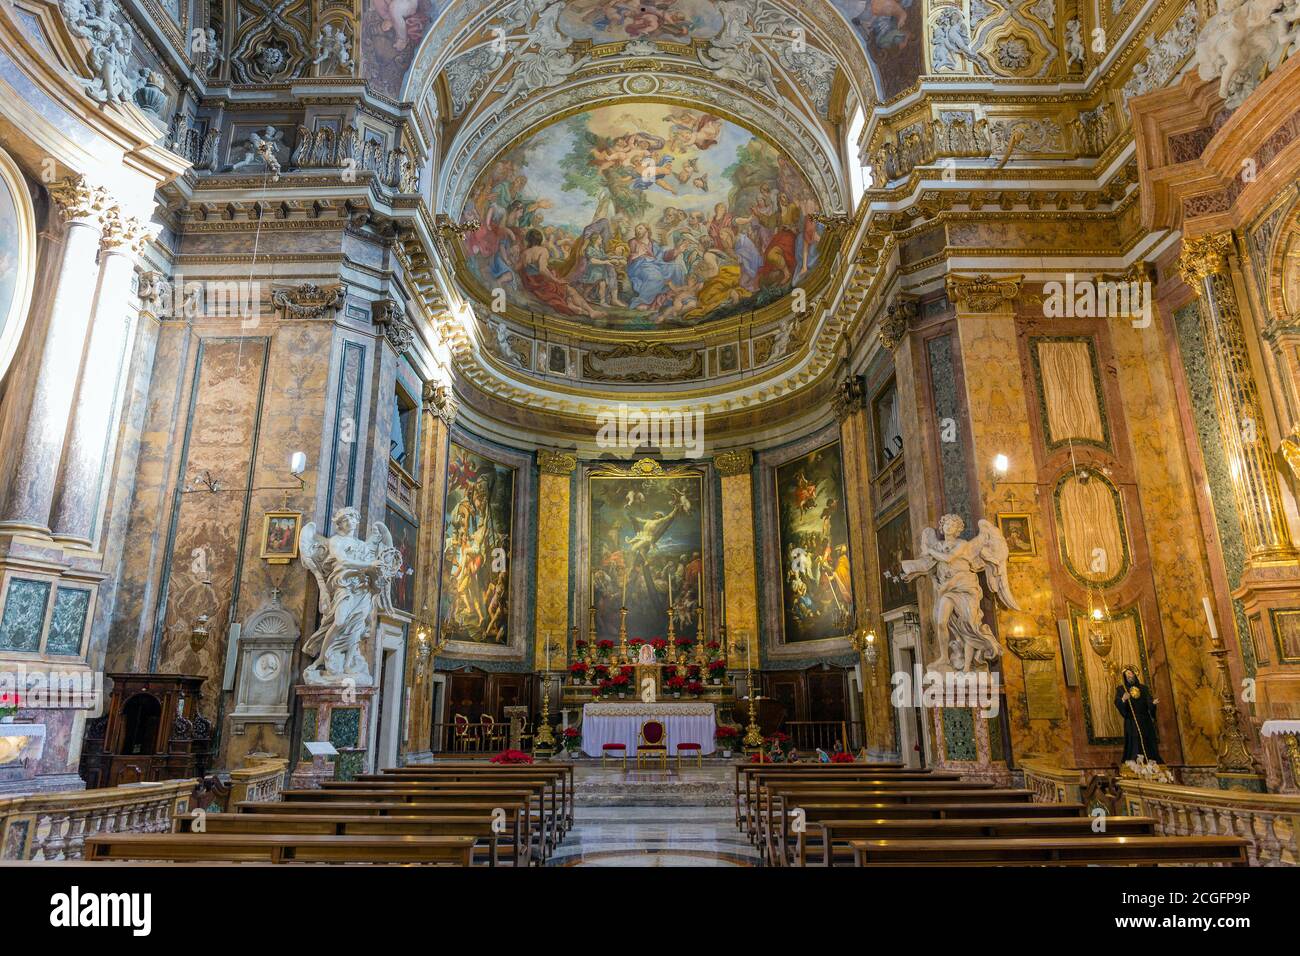 Innenraum der Basilika Sant'Andrea delle Fratte in Rom, Italien. Sant'Andrea delle Fratte ist eine Basilika aus dem 17. Jahrhundert, die dem Heiligen Andreas geweiht ist. Stockfoto